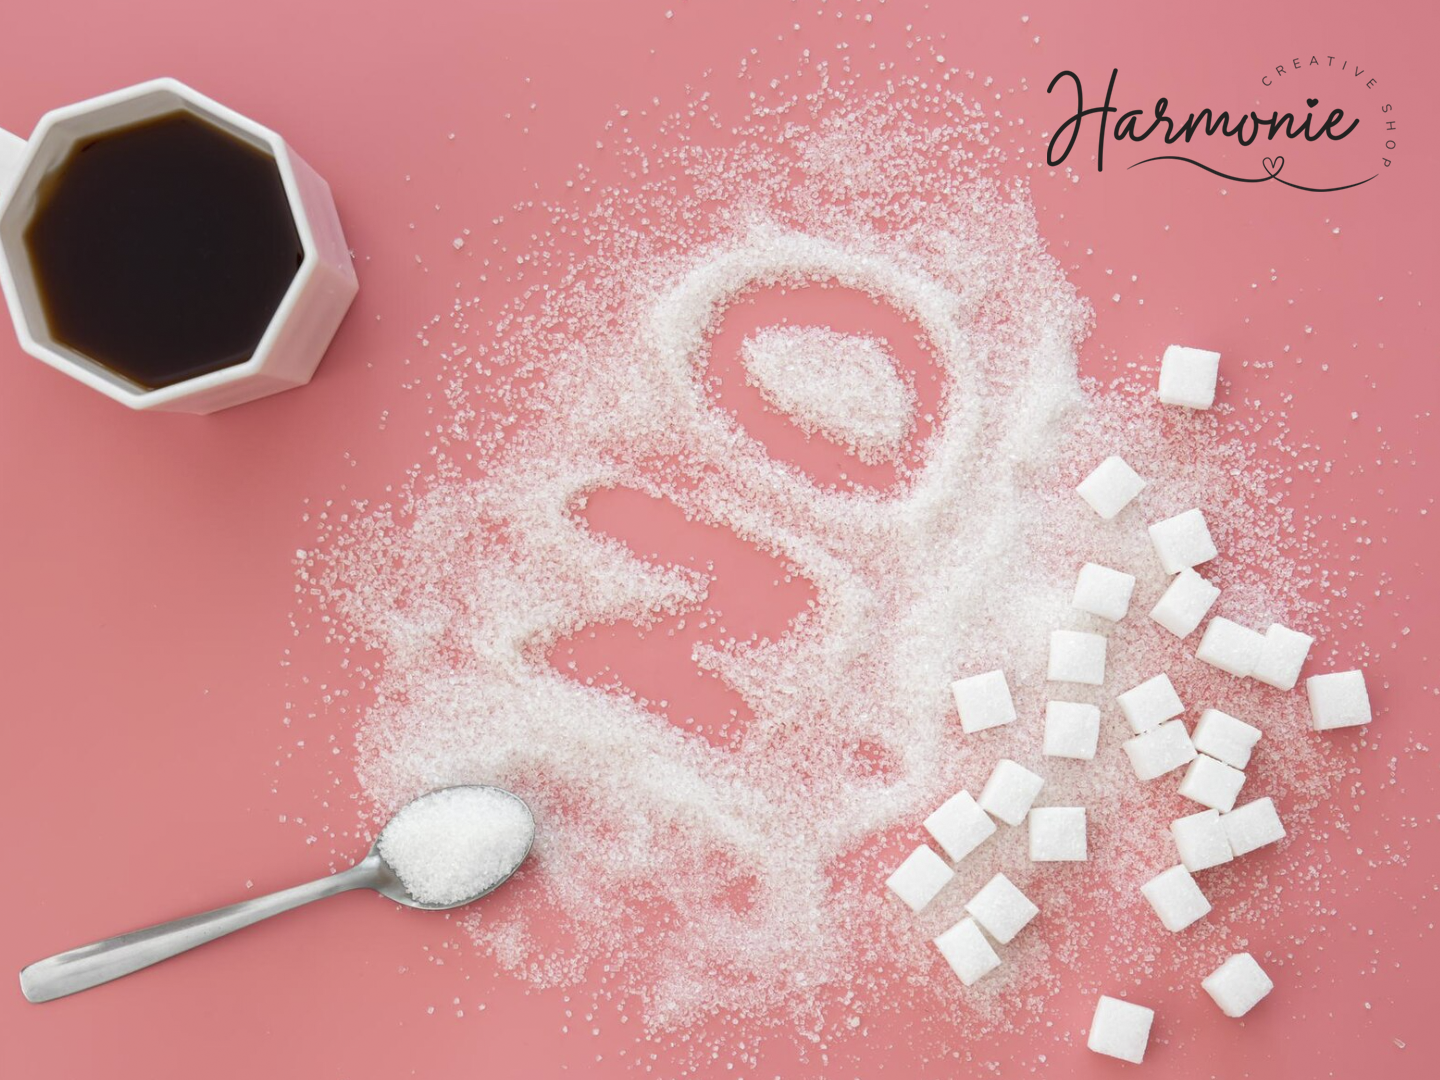 ¿Por qué consumir mucho azúcar puede ser malo?